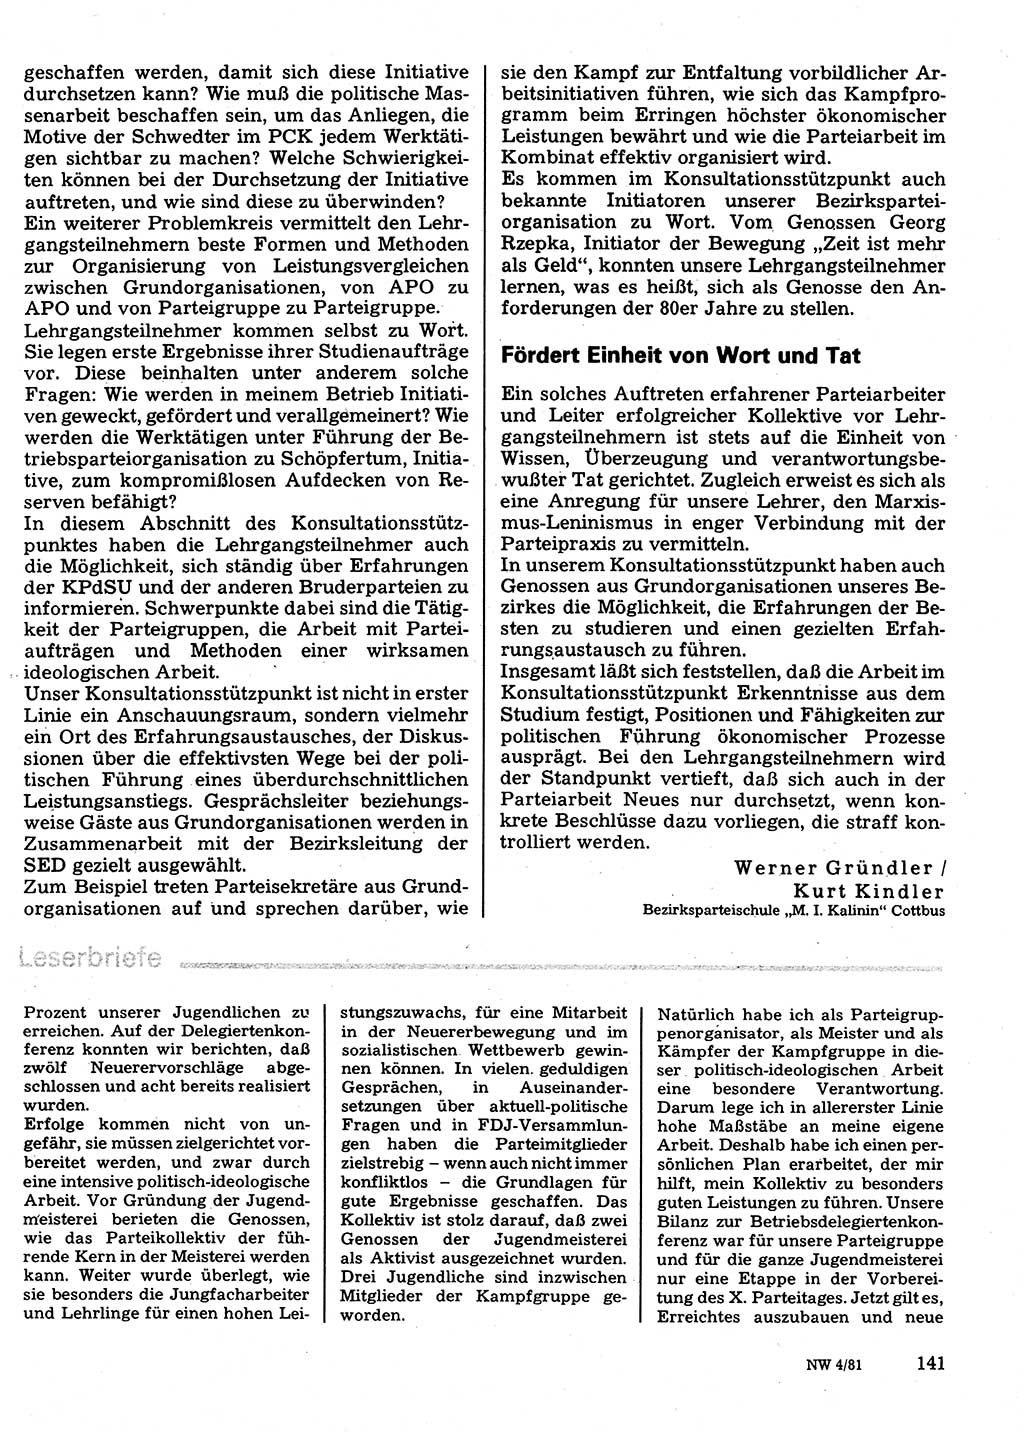 Neuer Weg (NW), Organ des Zentralkomitees (ZK) der SED (Sozialistische Einheitspartei Deutschlands) für Fragen des Parteilebens, 36. Jahrgang [Deutsche Demokratische Republik (DDR)] 1981, Seite 141 (NW ZK SED DDR 1981, S. 141)